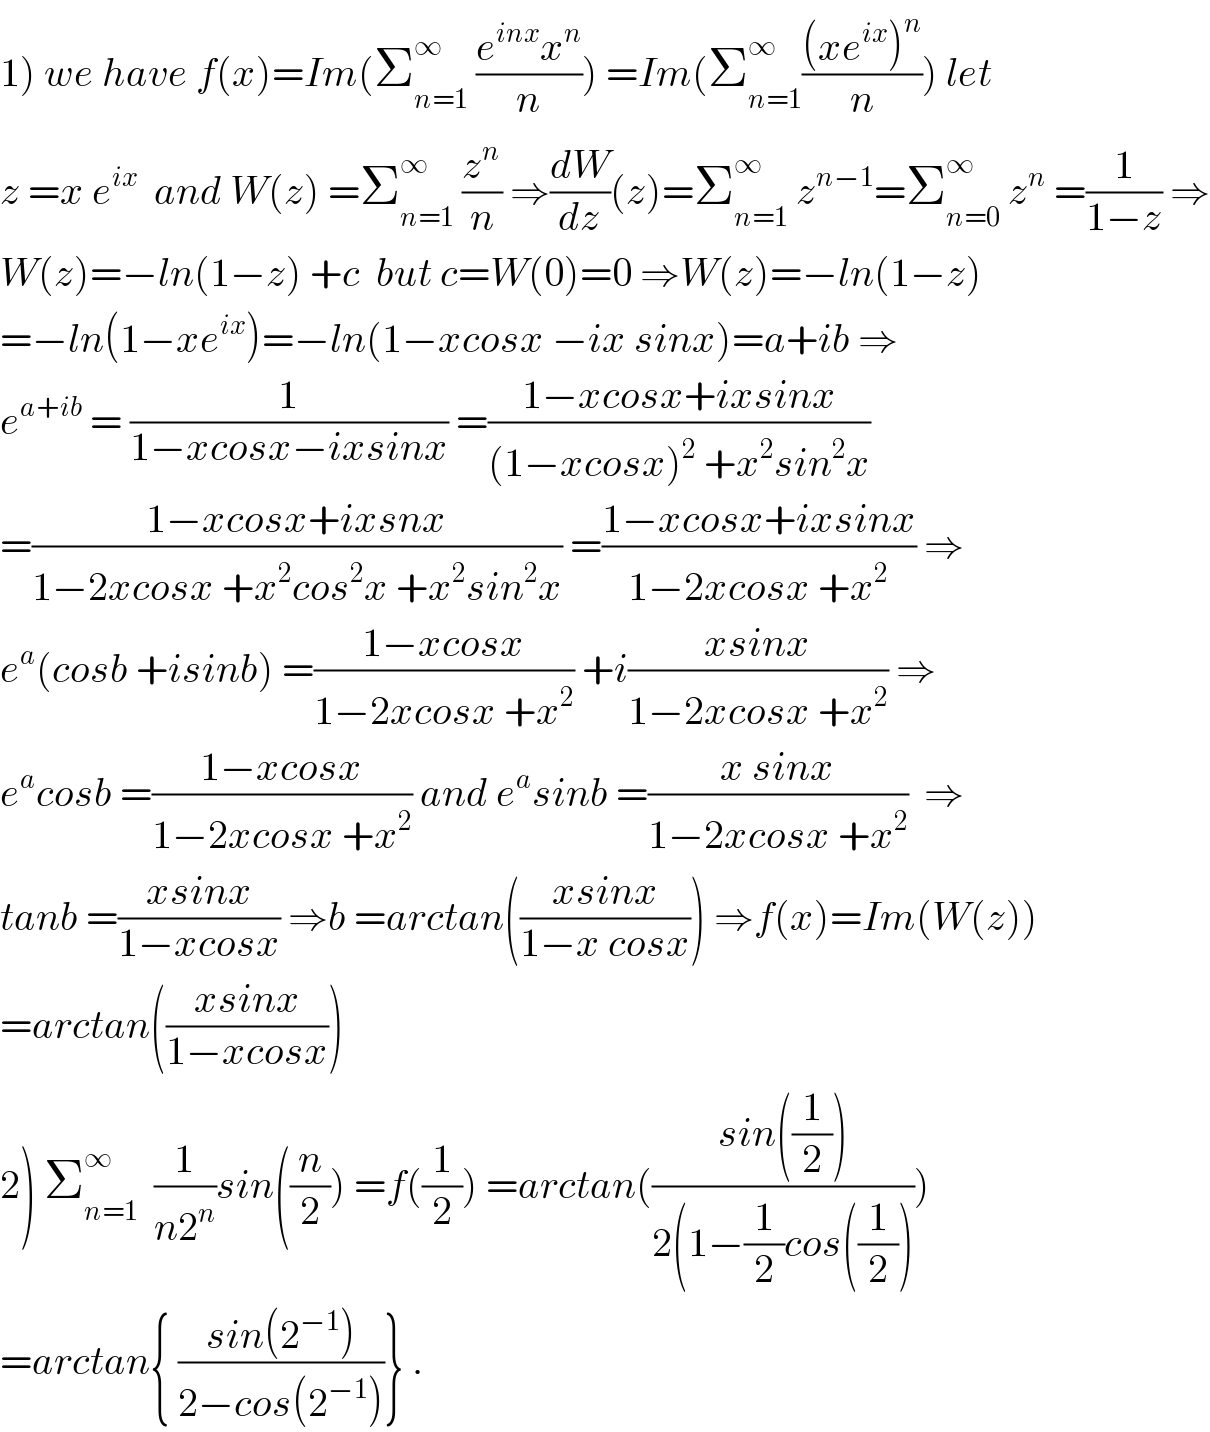 1) we have f(x)=Im(Σ_(n=1) ^∞  ((e^(inx) x^n )/n)) =Im(Σ_(n=1) ^∞ (((xe^(ix) )^n )/n)) let   z =x e^(ix)   and W(z) =Σ_(n=1) ^∞  (z^n /n) ⇒(dW/dz)(z)=Σ_(n=1) ^∞  z^(n−1) =Σ_(n=0) ^∞  z^n  =(1/(1−z)) ⇒  W(z)=−ln(1−z) +c  but c=W(0)=0 ⇒W(z)=−ln(1−z)  =−ln(1−xe^(ix) )=−ln(1−xcosx −ix sinx)=a+ib ⇒  e^(a+ib)  = (1/(1−xcosx−ixsinx)) =((1−xcosx+ixsinx)/((1−xcosx)^2  +x^2 sin^2 x))  =((1−xcosx+ixsnx)/(1−2xcosx +x^2 cos^2 x +x^2 sin^2 x)) =((1−xcosx+ixsinx)/(1−2xcosx +x^2 )) ⇒  e^a (cosb +isinb) =((1−xcosx)/(1−2xcosx +x^2 )) +i((xsinx)/(1−2xcosx +x^2 )) ⇒  e^a cosb =((1−xcosx)/(1−2xcosx +x^2 )) and e^a sinb =((x sinx)/(1−2xcosx +x^2 ))  ⇒  tanb =((xsinx)/(1−xcosx)) ⇒b =arctan(((xsinx)/(1−x cosx))) ⇒f(x)=Im(W(z))  =arctan(((xsinx)/(1−xcosx)))  2) Σ_(n=1) ^∞   (1/(n2^n ))sin((n/2)) =f((1/2)) =arctan(((sin((1/2)))/(2(1−(1/2)cos((1/2)))))  =arctan{ ((sin(2^(−1) ))/(2−cos(2^(−1) )))} .  